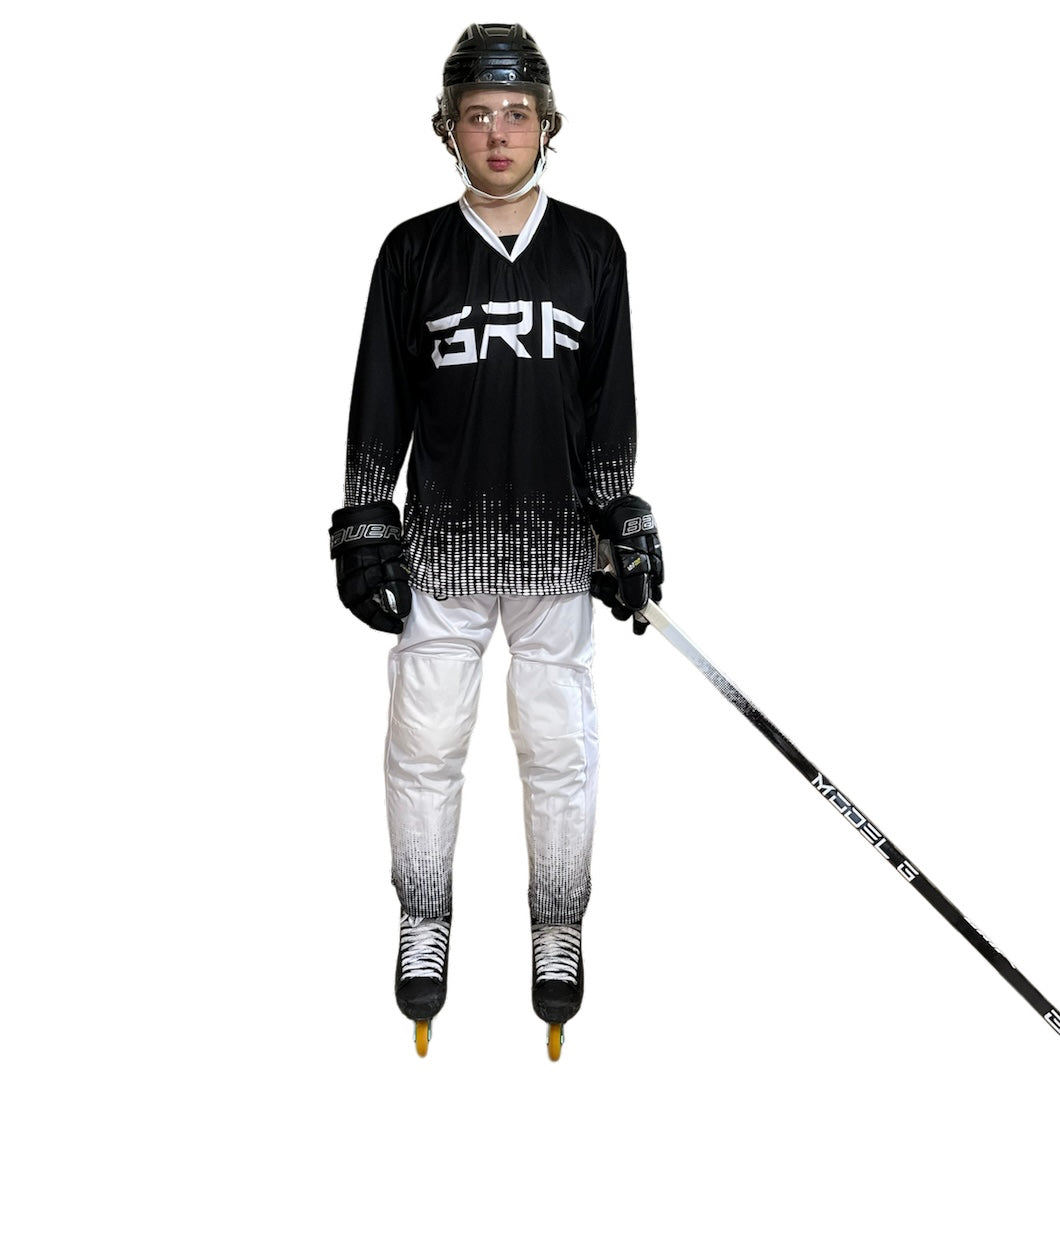 White Roller Hockey Pant